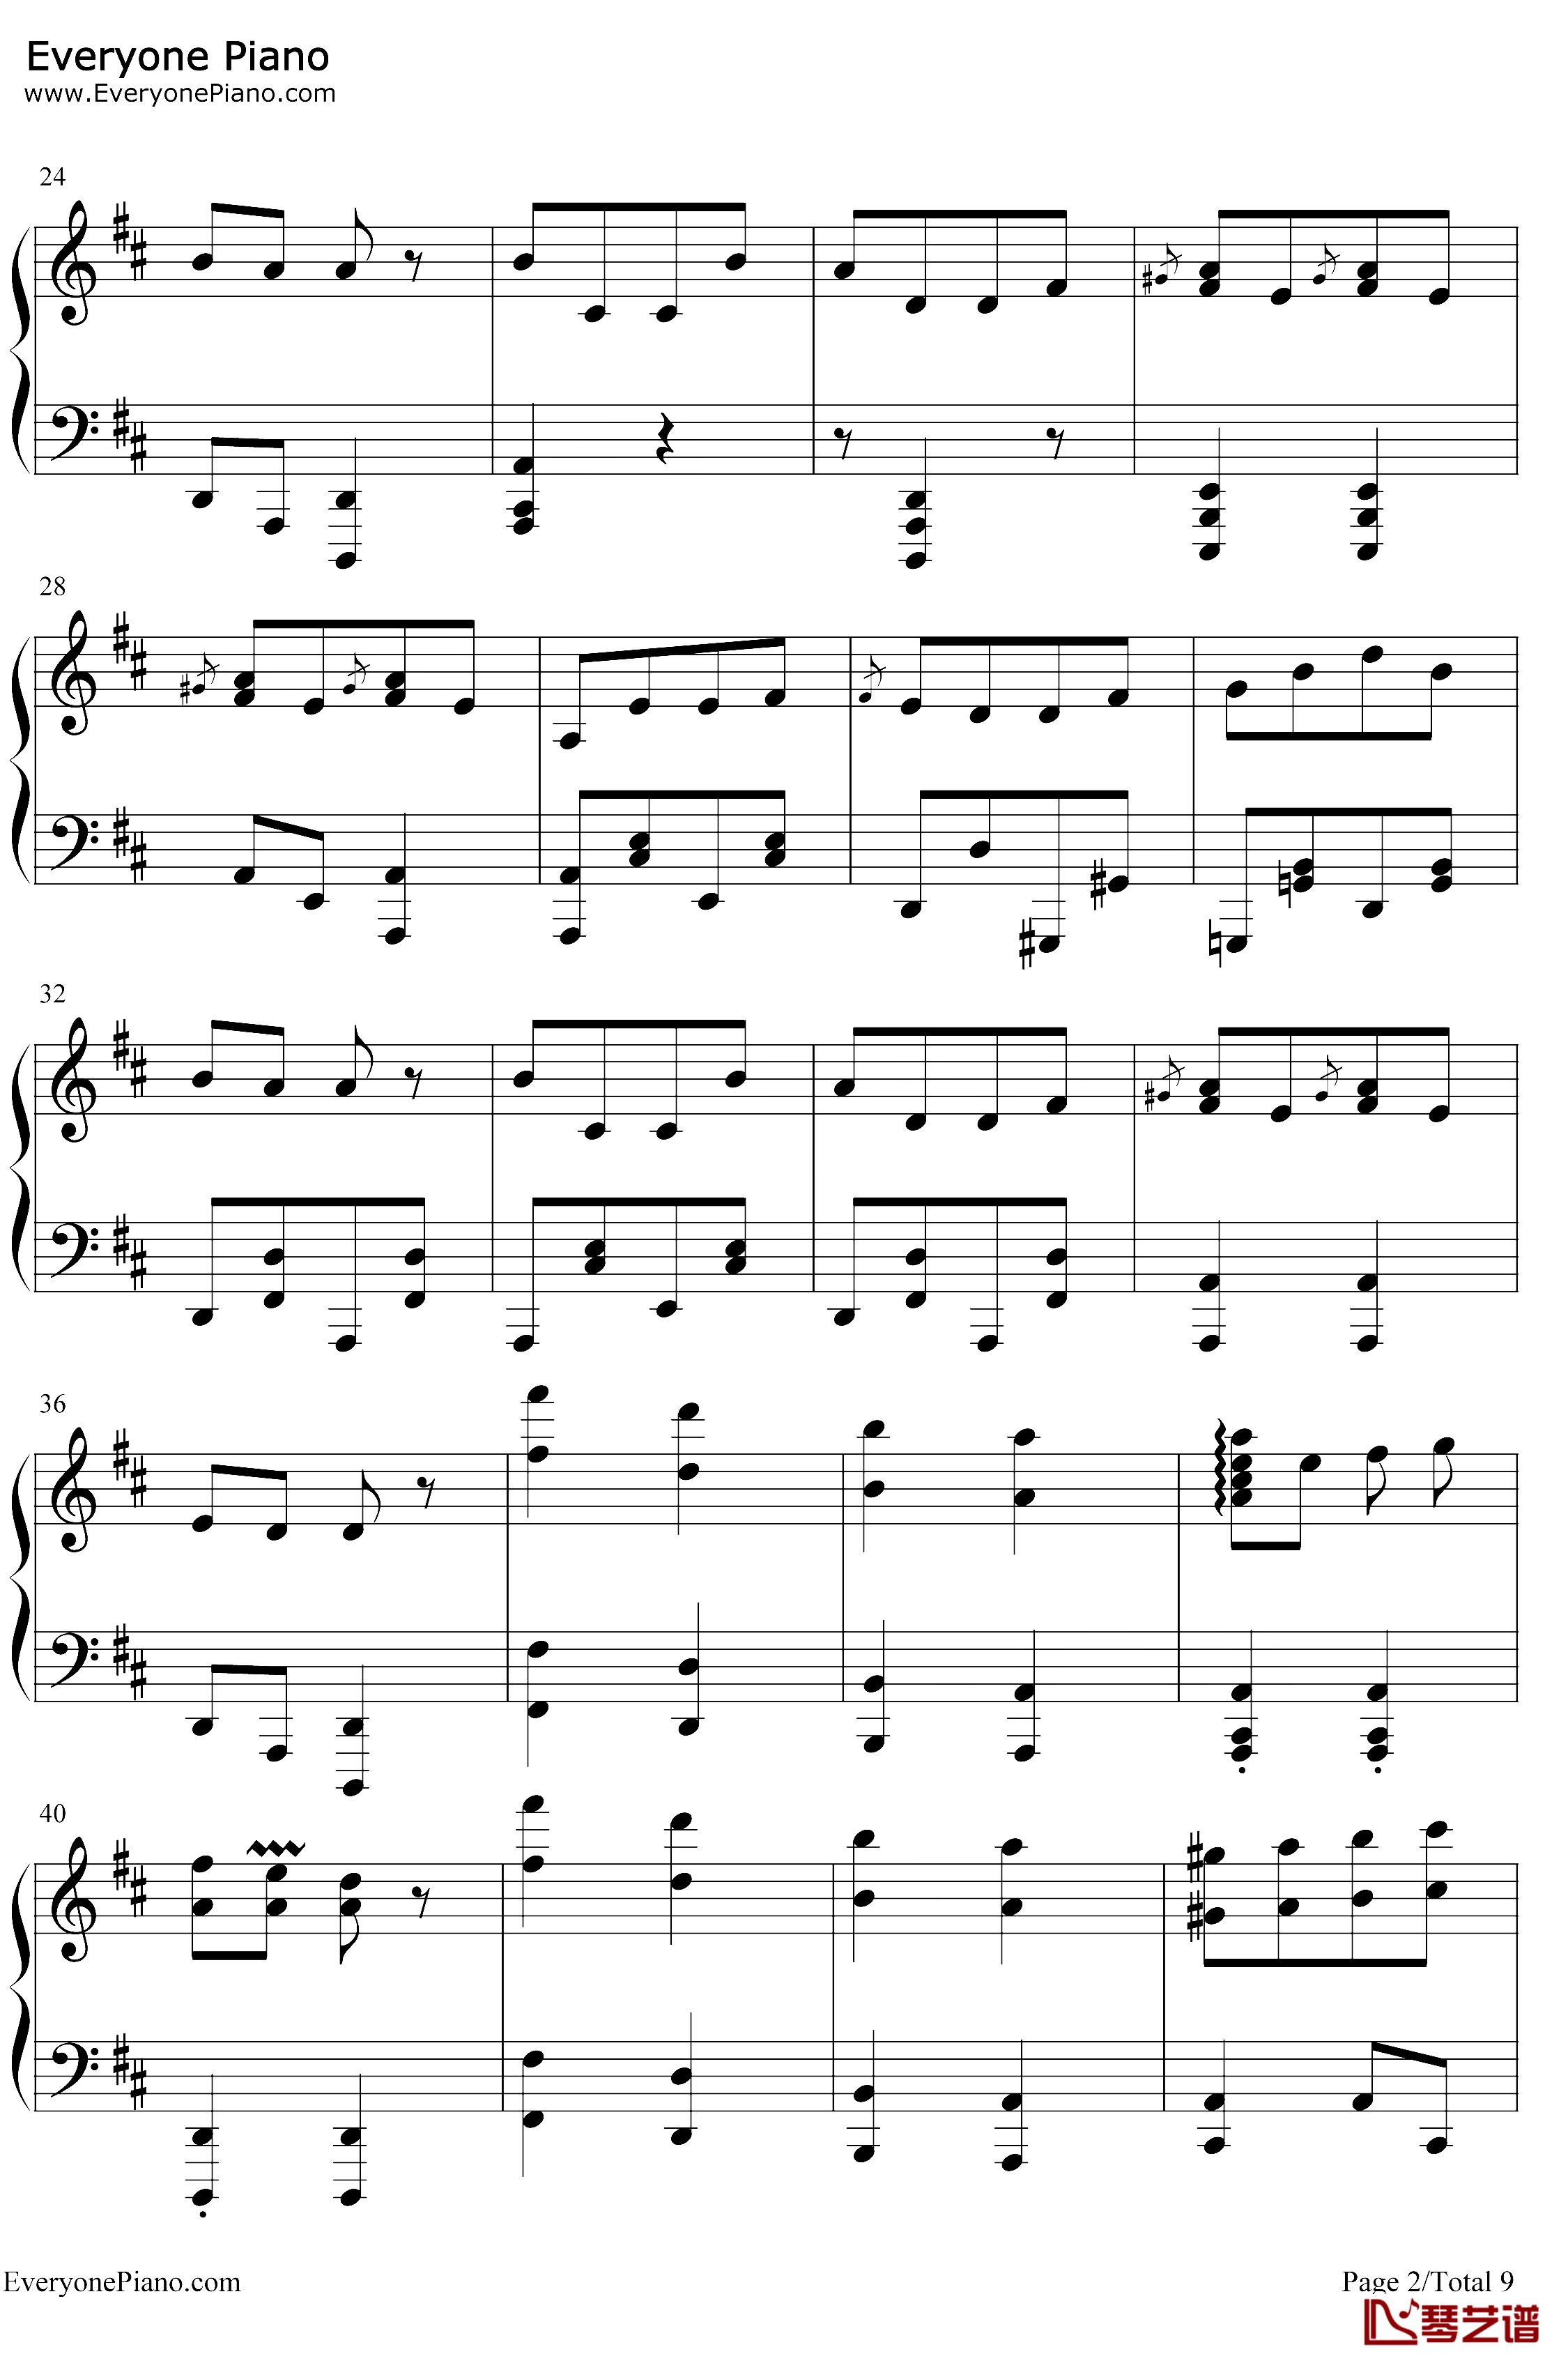 康康舞曲钢琴谱-雅克·奥芬巴赫-触手猴版-天堂与地狱序曲-地狱中的奥菲欧序曲2